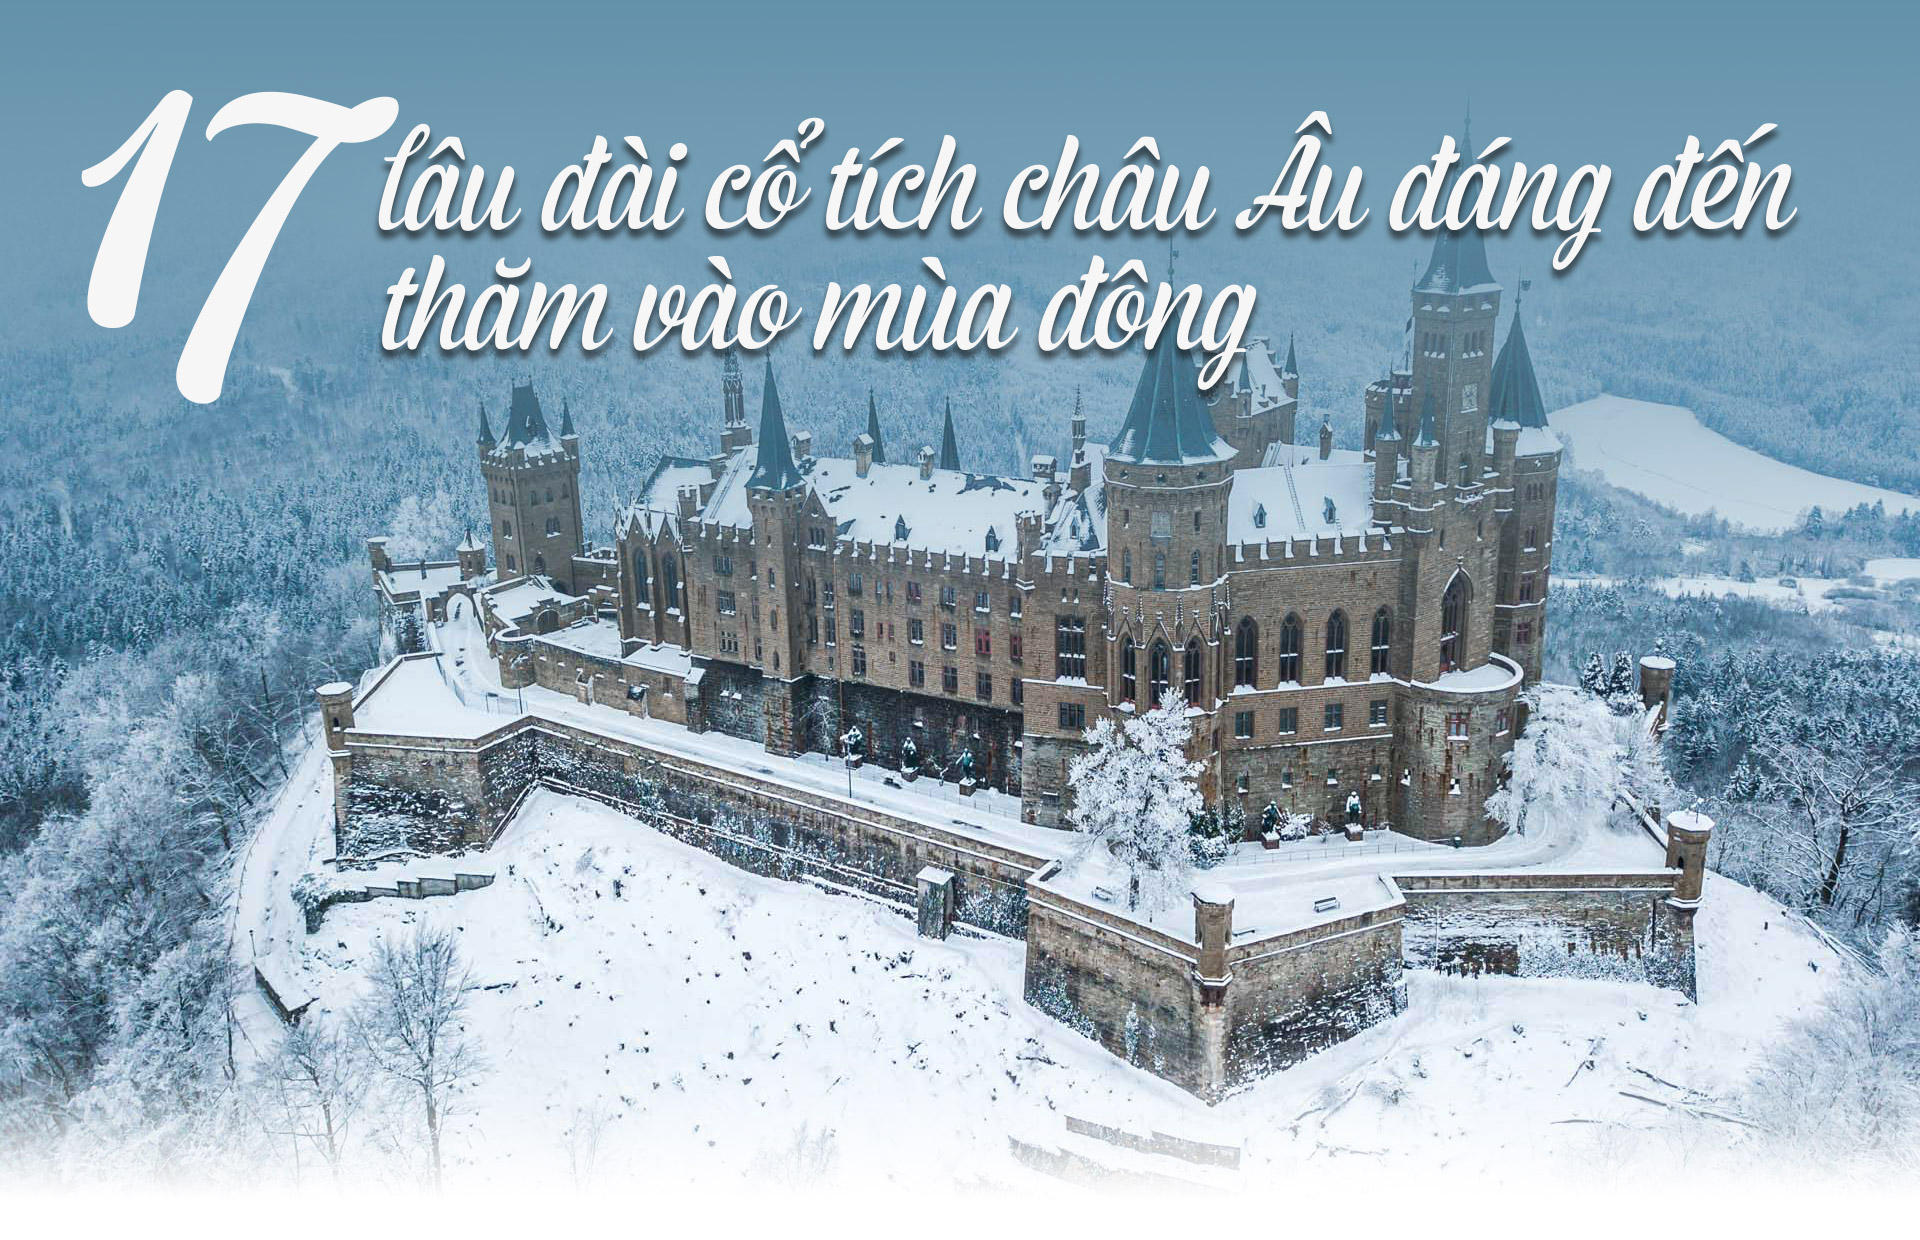 17 lâu đài cổ tích châu Âu đáng đến thăm vào mùa đông - 1